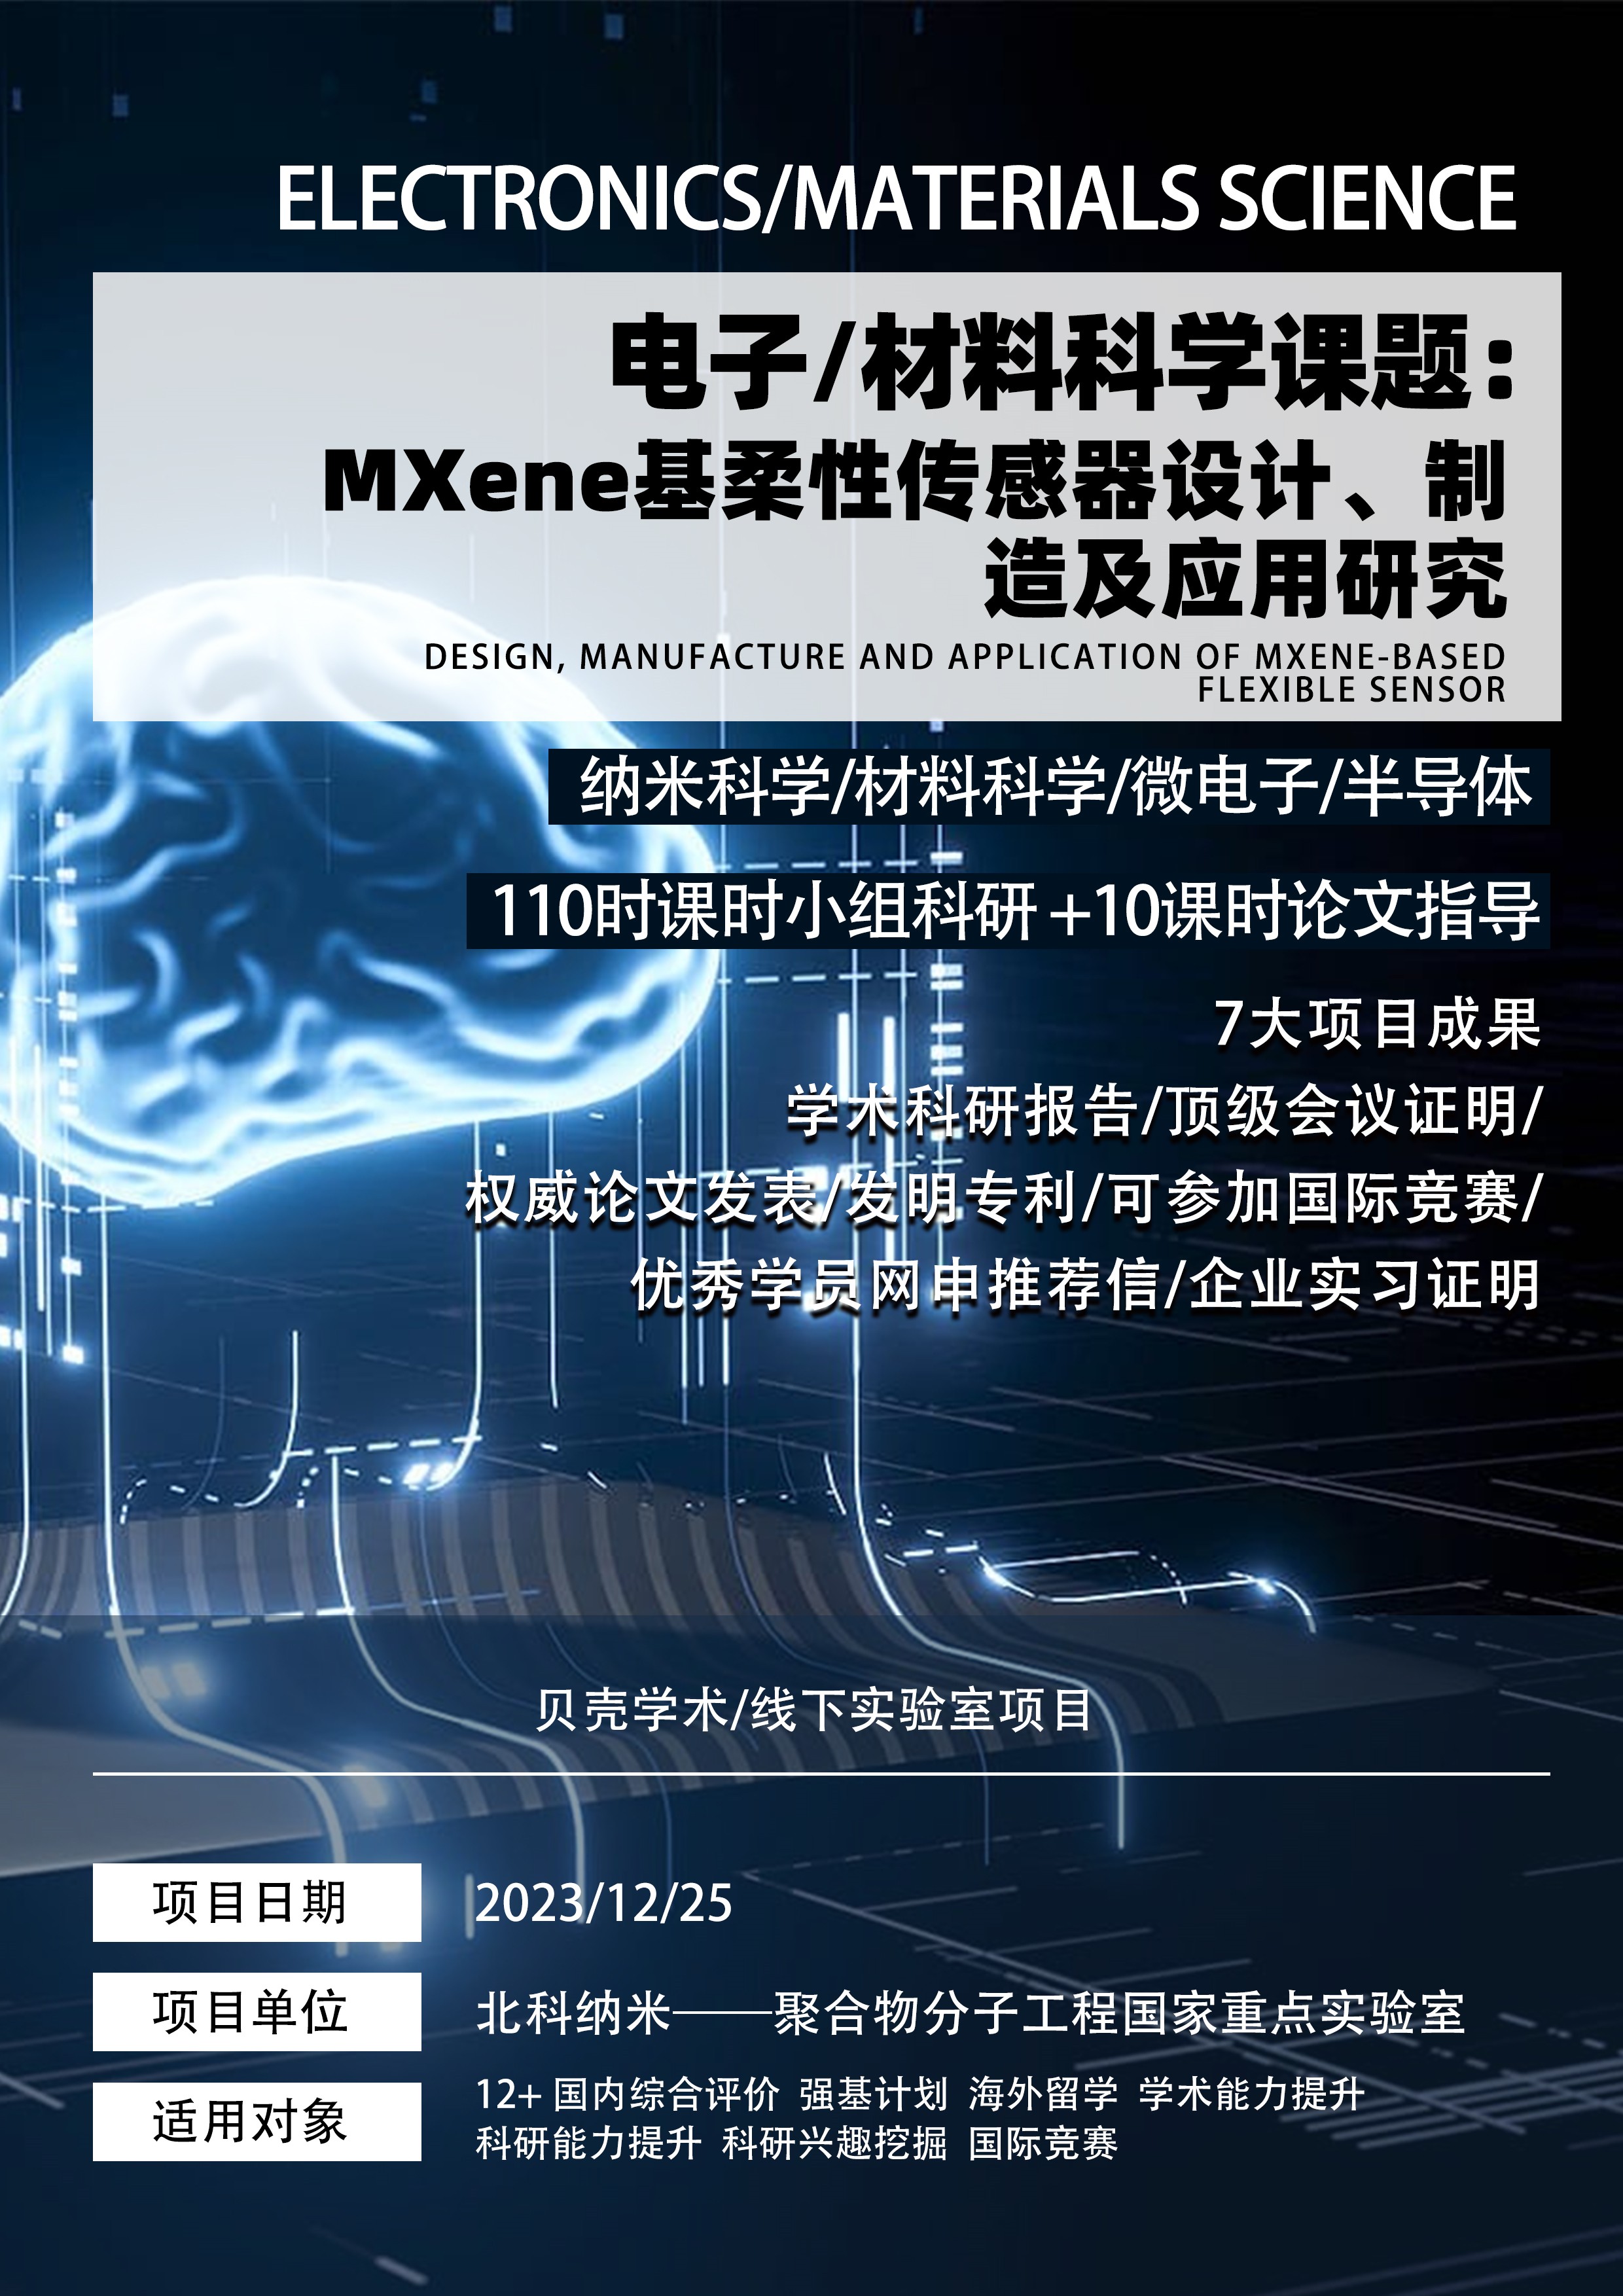 电子/材料科学丨MXene基柔性传感器设计、制造及应用研究